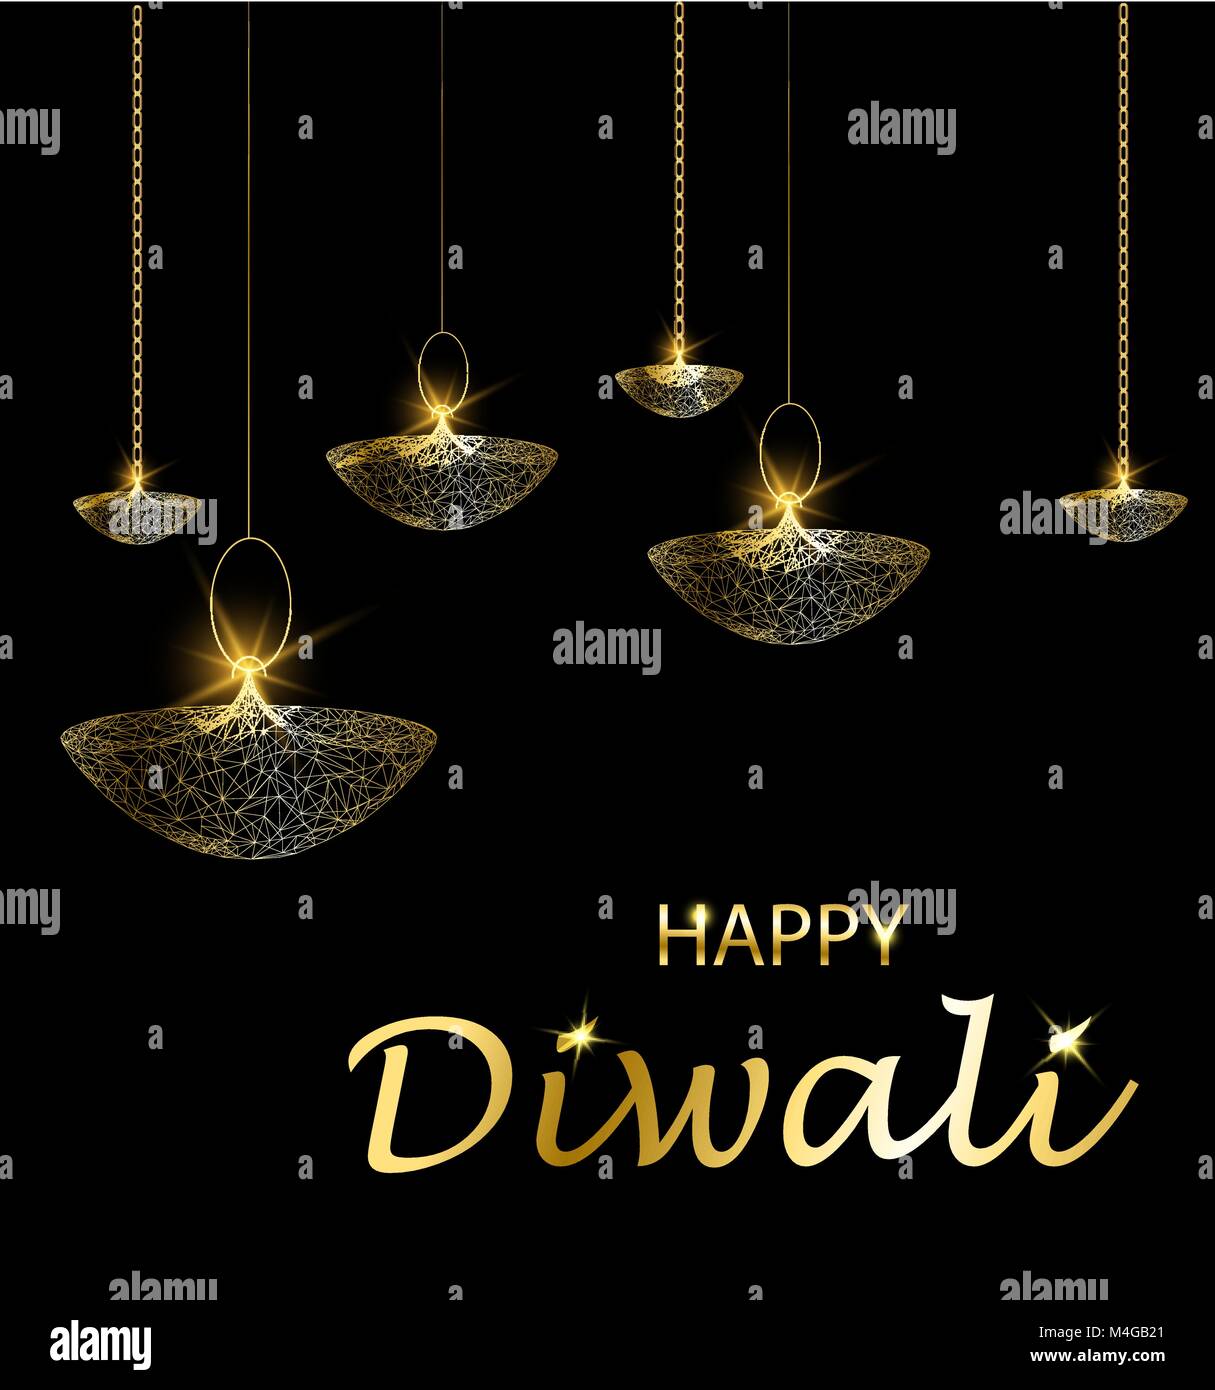 Happy diwali Vector Illustration. Deepavali Festival Licht und Feuer. Hängende  Lampen. Gold Farben, polygonal Kunst auf schwarzem Hintergrund  Stock-Vektorgrafik - Alamy